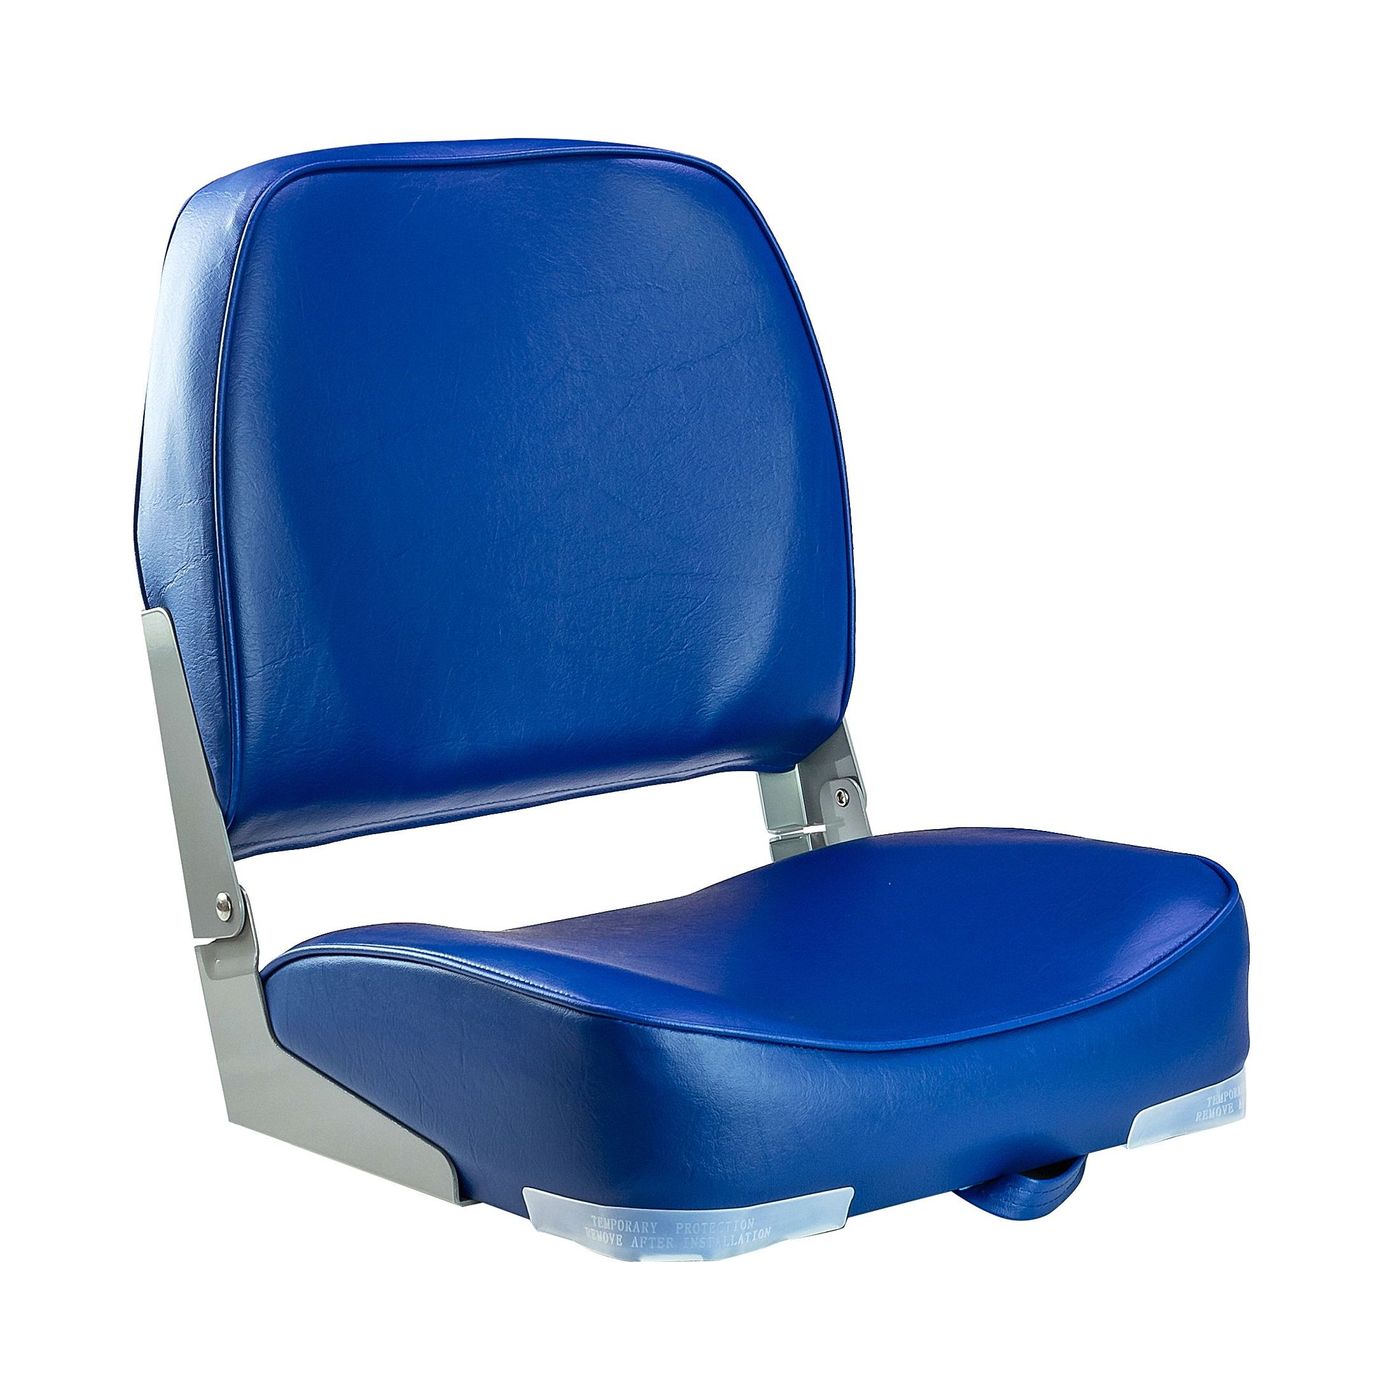 Кресло мягкое складное, обивка винил, цвет синий, Marine Rocket 75103B-MR кресло мягкое deluxe sport с откидным валиком белый синий 1043251